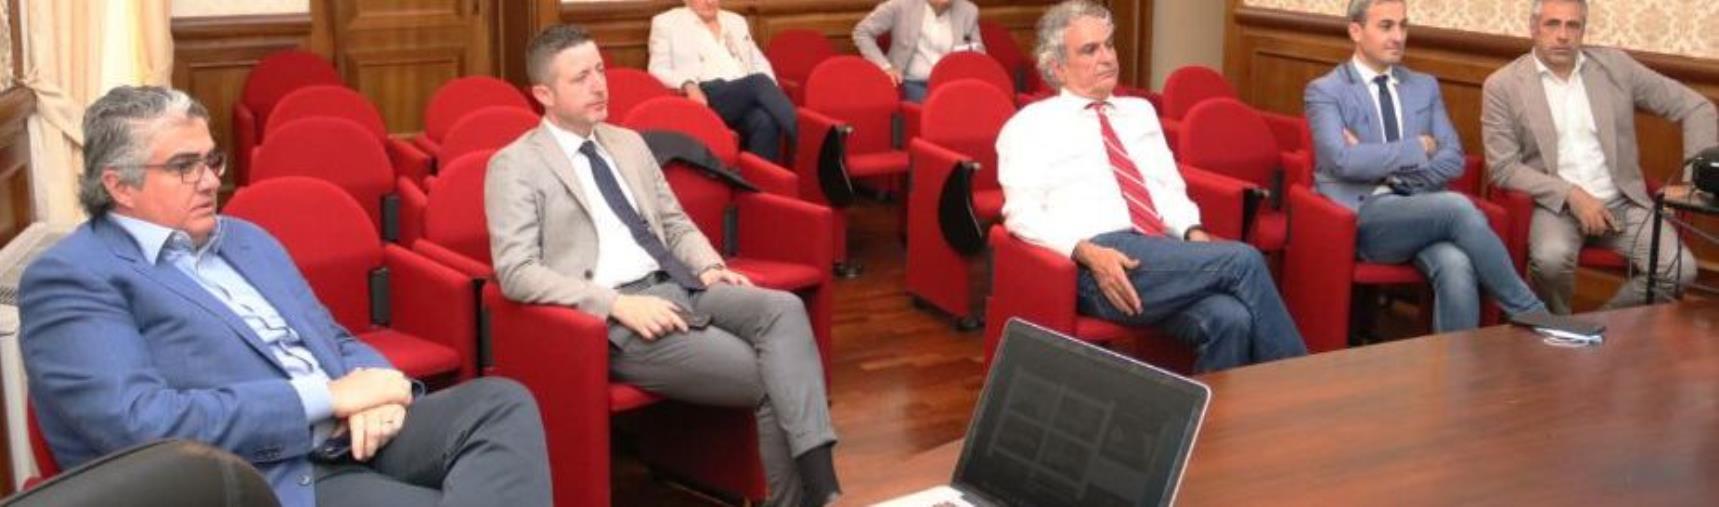 images Imprese ed estero, Carè (IV): “Calabria e Mezzogiorno possono essere il motore dello sviluppo nei prossimi anni”